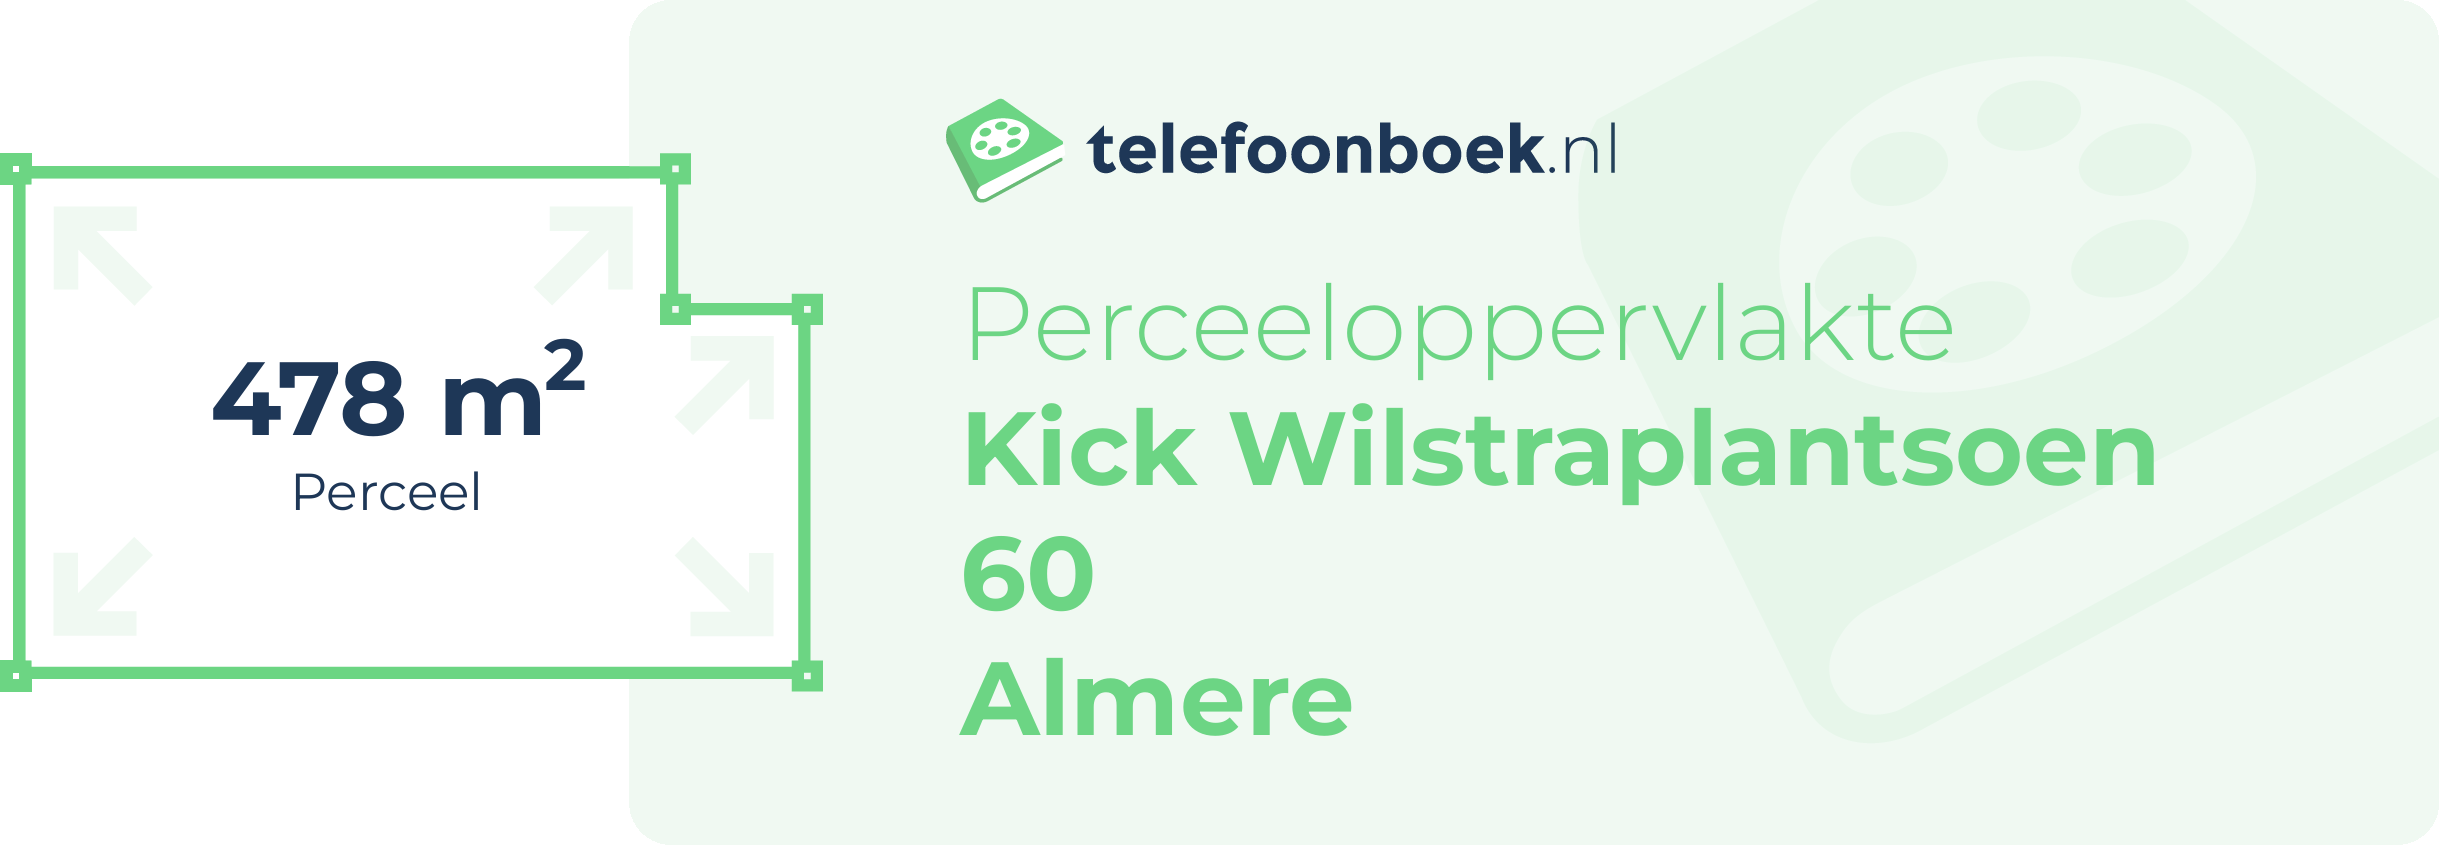 Perceeloppervlakte Kick Wilstraplantsoen 60 Almere